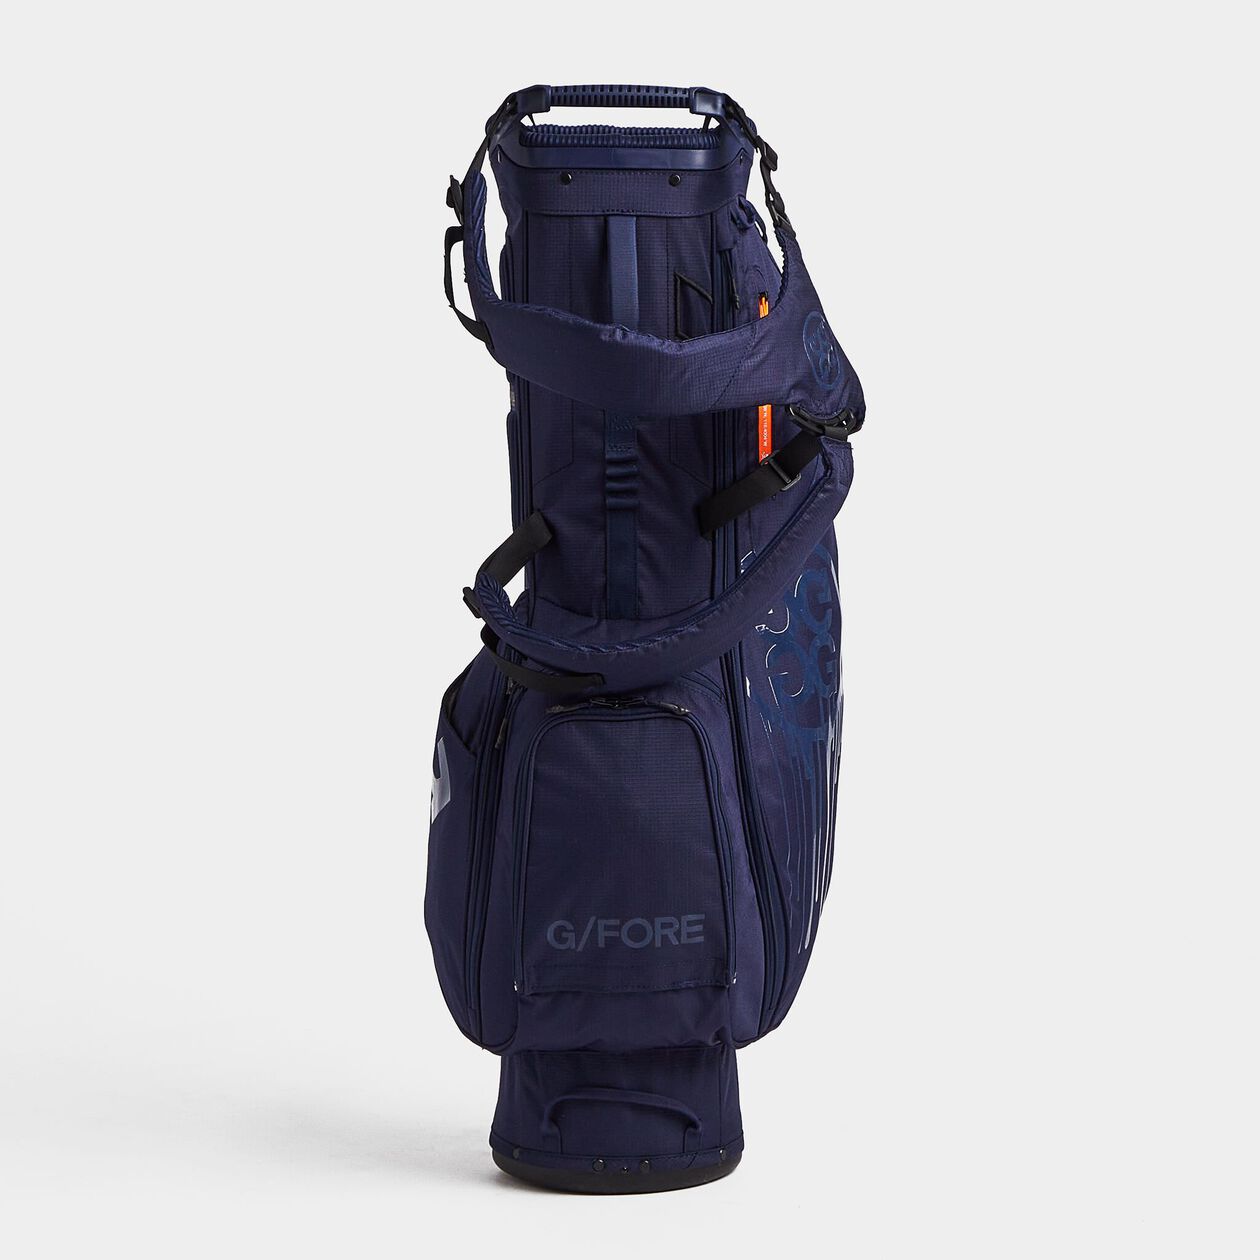 G/Fore Bandana Lightweight Golf Carry Bag